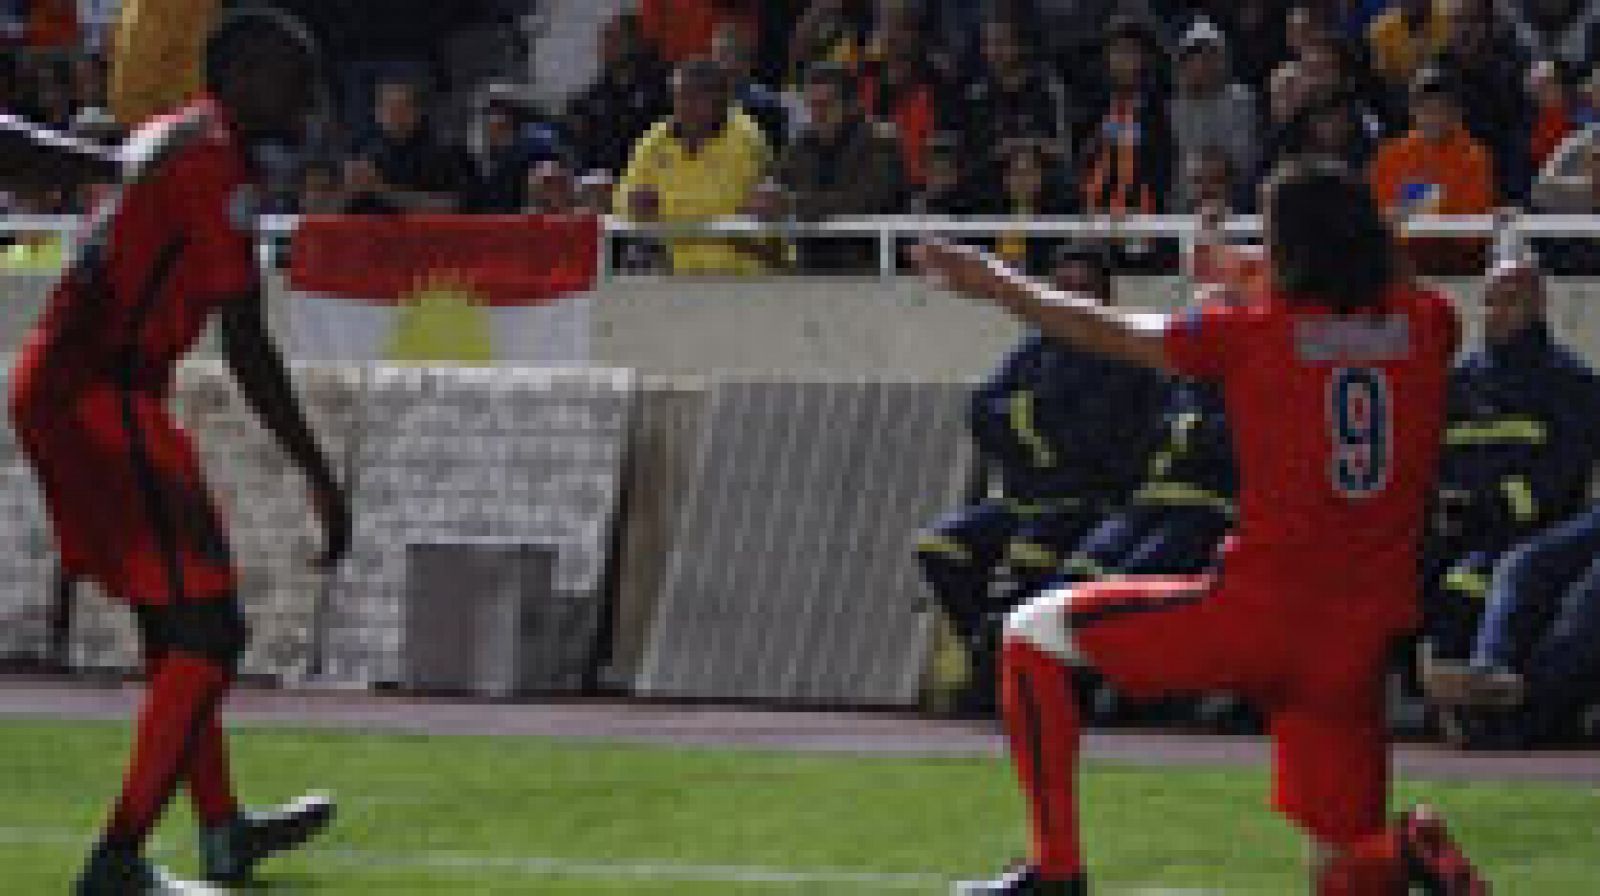 El uruguayo Edinson Cavani logró en el minuto 86 el gol que dio al París Saint-Germain la victoria en el campo del Apoel Nicosia (0-1) y le permite conservar el liderato del grupo F.
